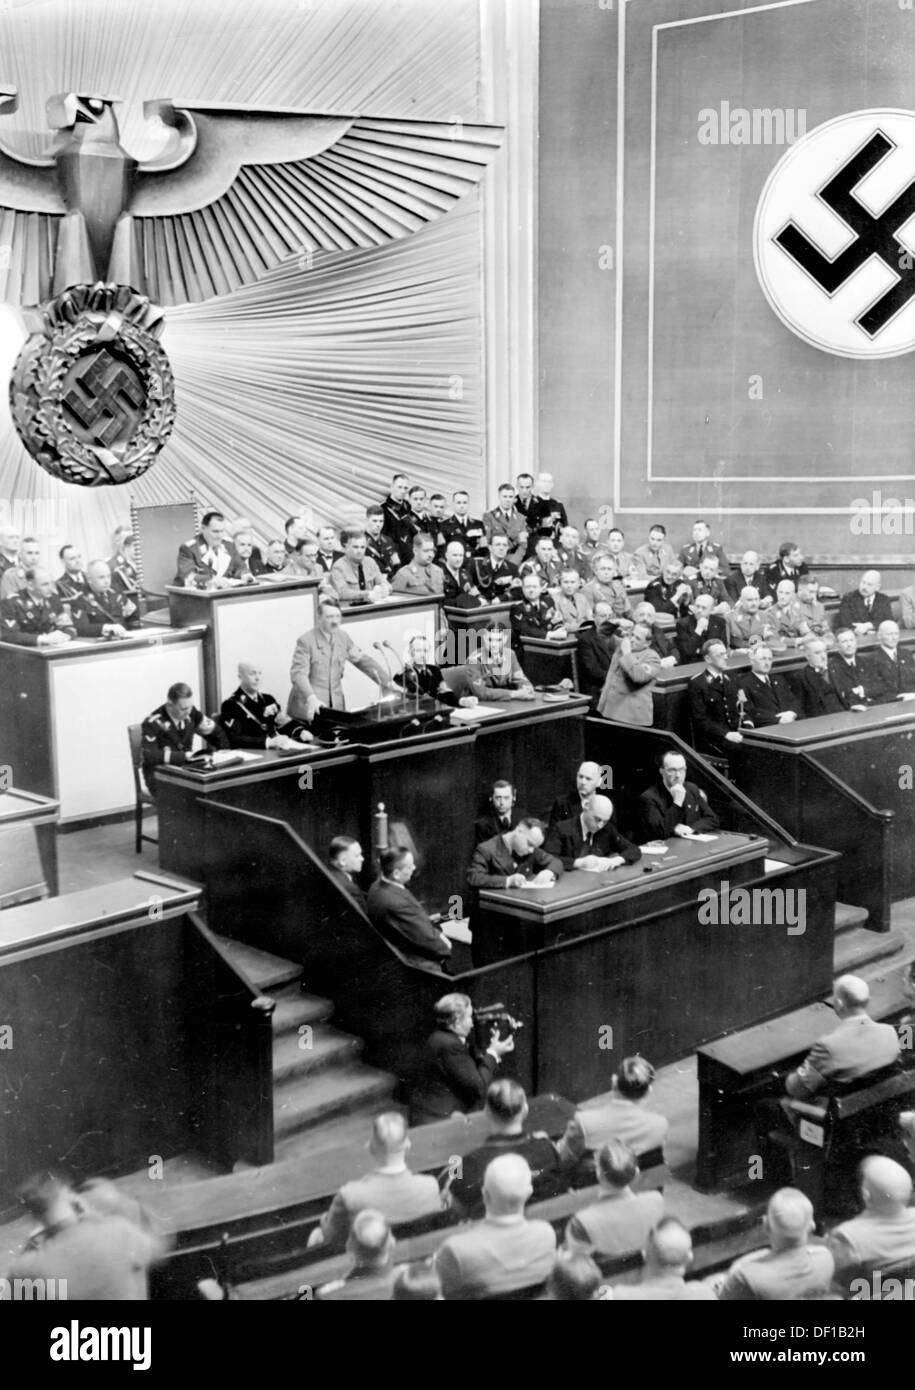 L'image de la propagande nazie! Le chancelier Adolf Hitler prononce un discours à l'Opéra de Kroll à Berlin, en Allemagne, le 18 mars 1938. Le discours traite, entre autres, de l'annexion de l'Autriche par le Reich allemand. A droite, le gouvernement autrichien dirigé par Arthur Seyß-Inquart est représenté, à gauche, le gouvernement allemand Reich. Fotoarchiv für Zeitgeschichte Banque D'Images